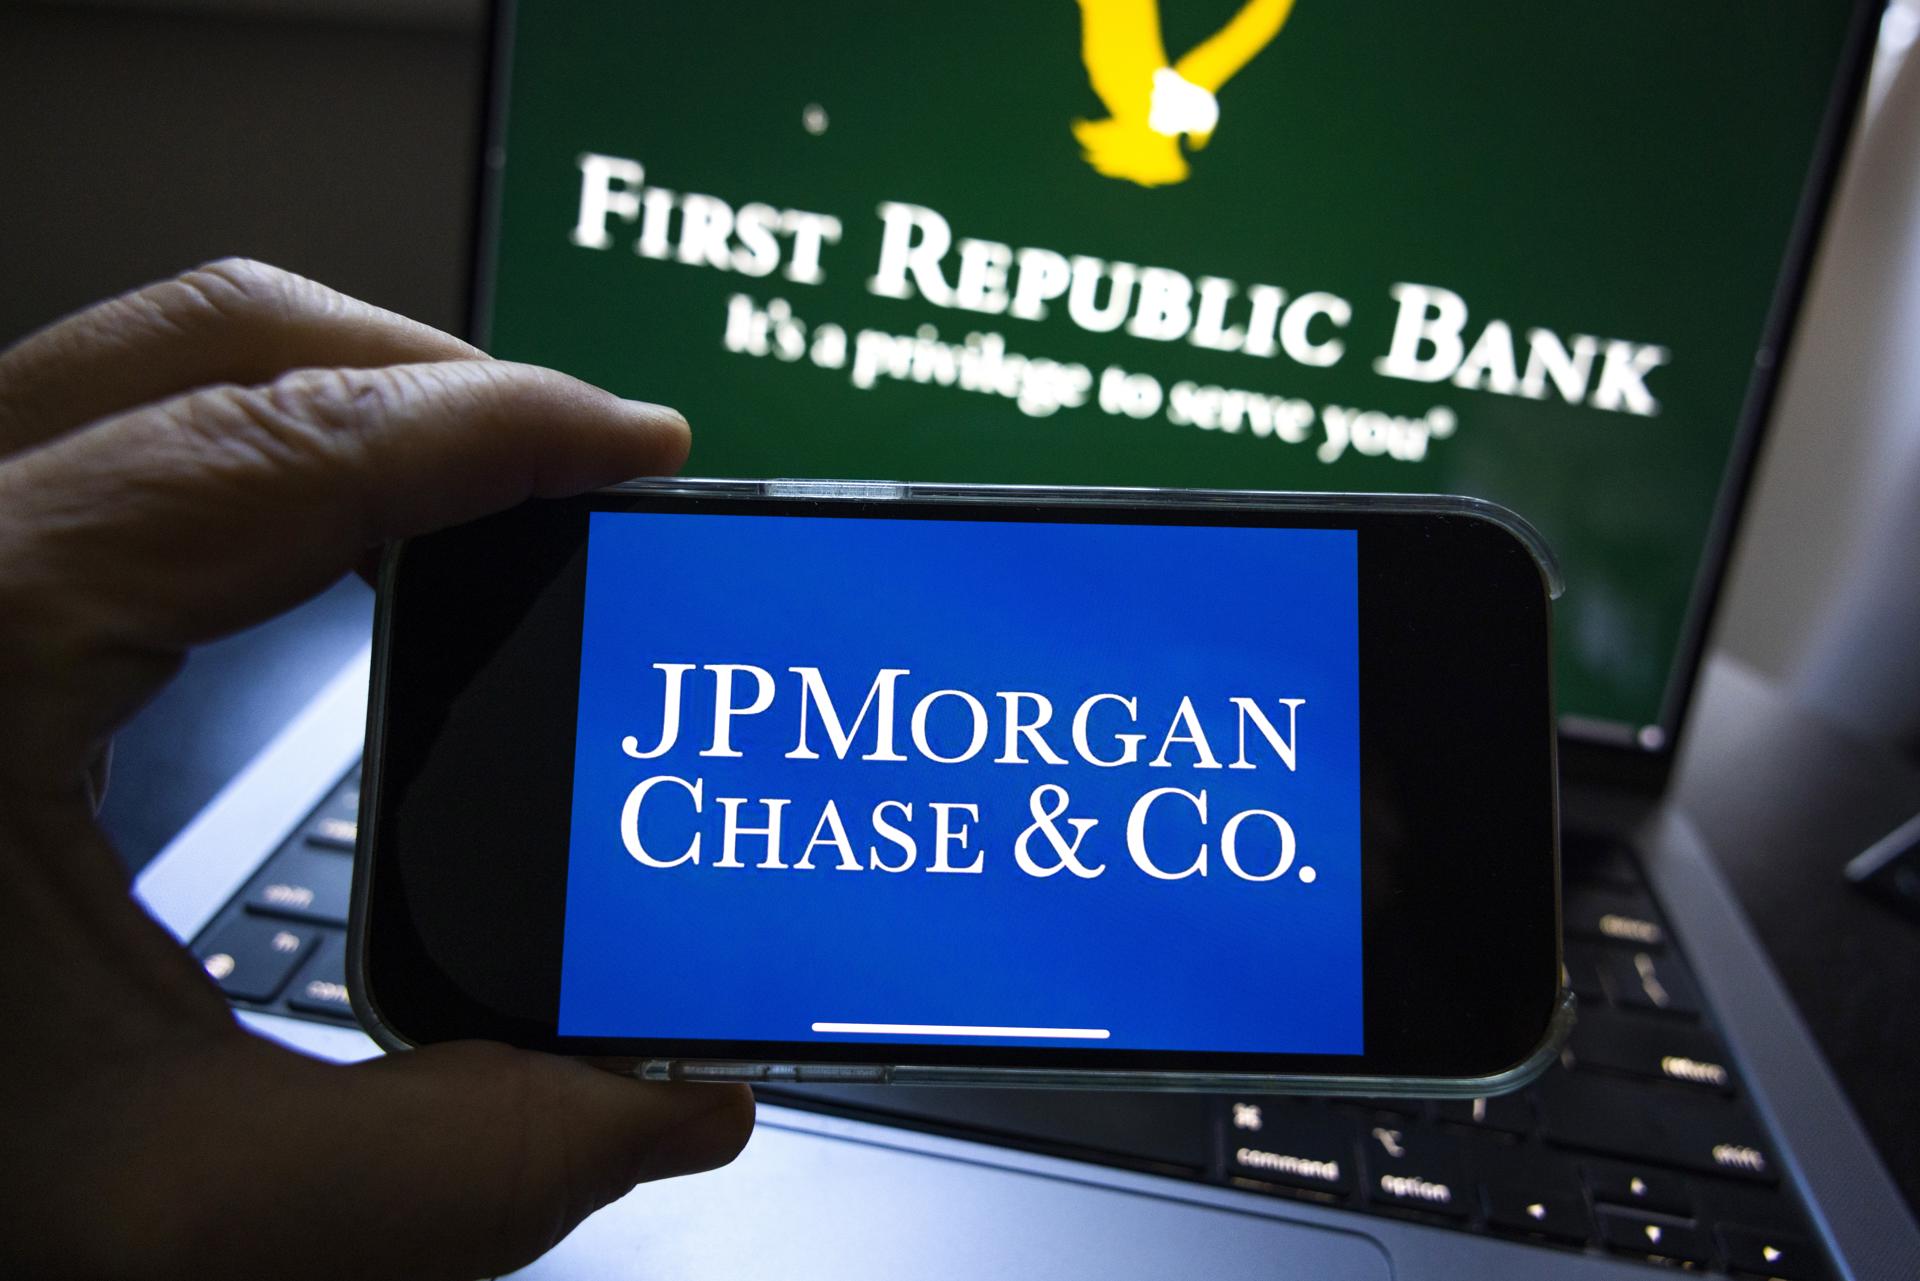 Vista del logo de JP Morgan Chase & Co en un teléfono móvil, frente a un monitor que muestra el logotipo del First Republic Bank, en Washington, este 1 de mayo de 2023. EFE/Jim Lo Scalzo